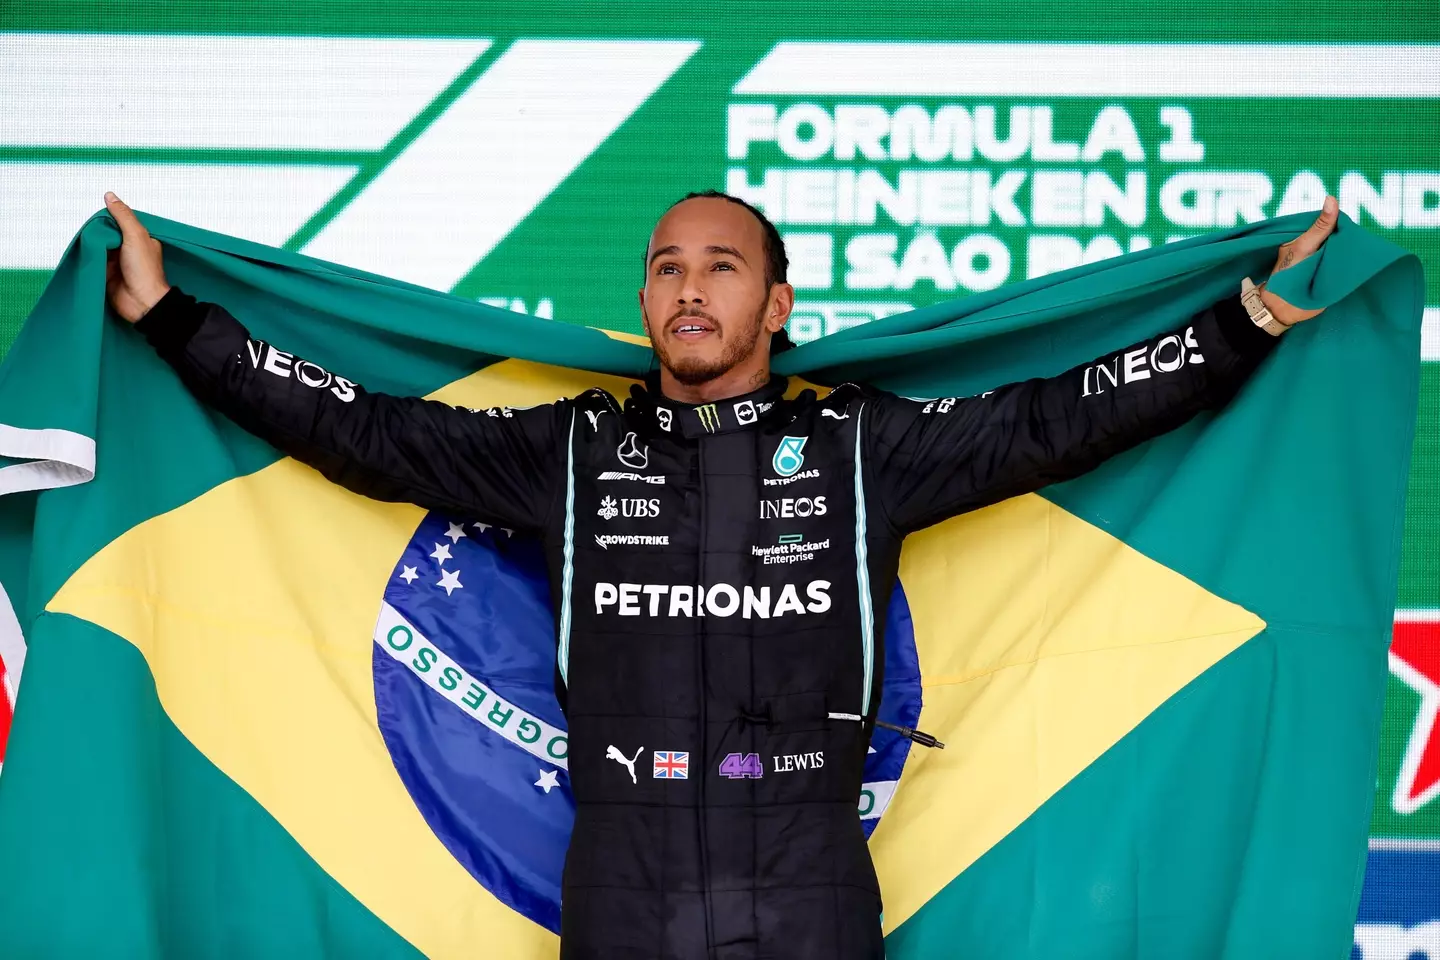 Hamilton celebrates with the Brazilian flag. Image: PA Images